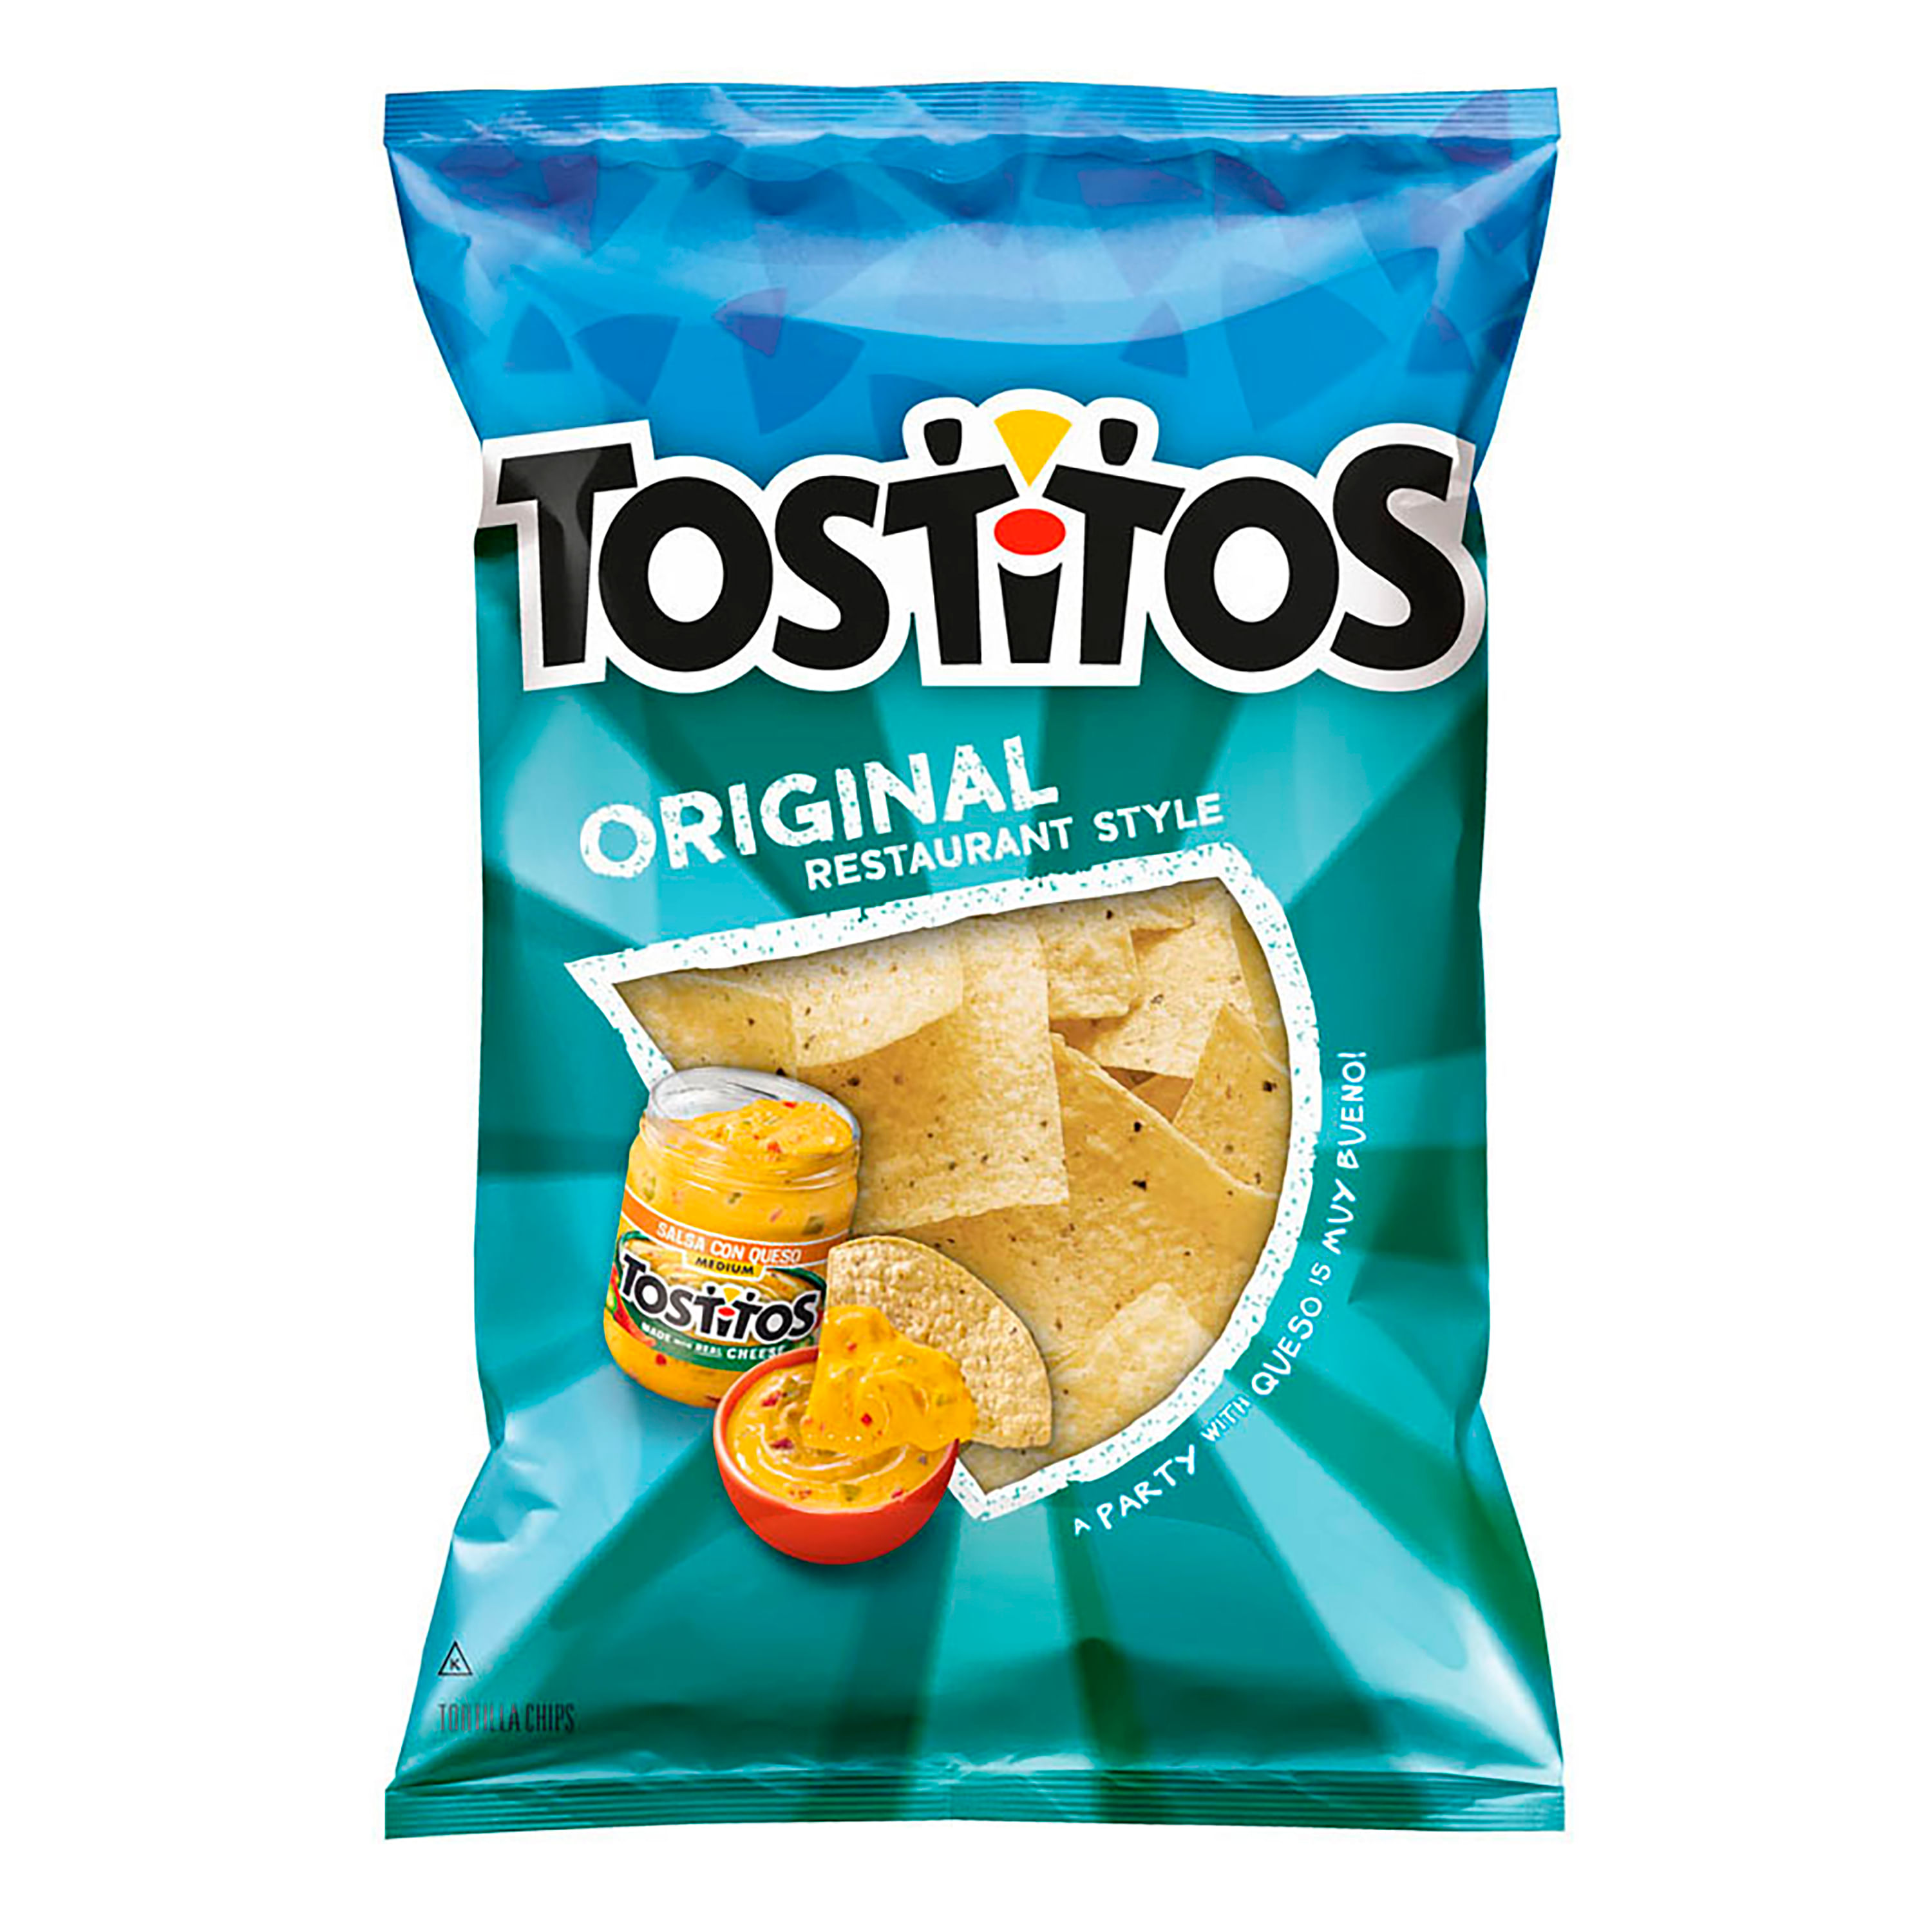 Snack-Frito-Lay-Tostitos-Original-Restaurante-284gr-1-655